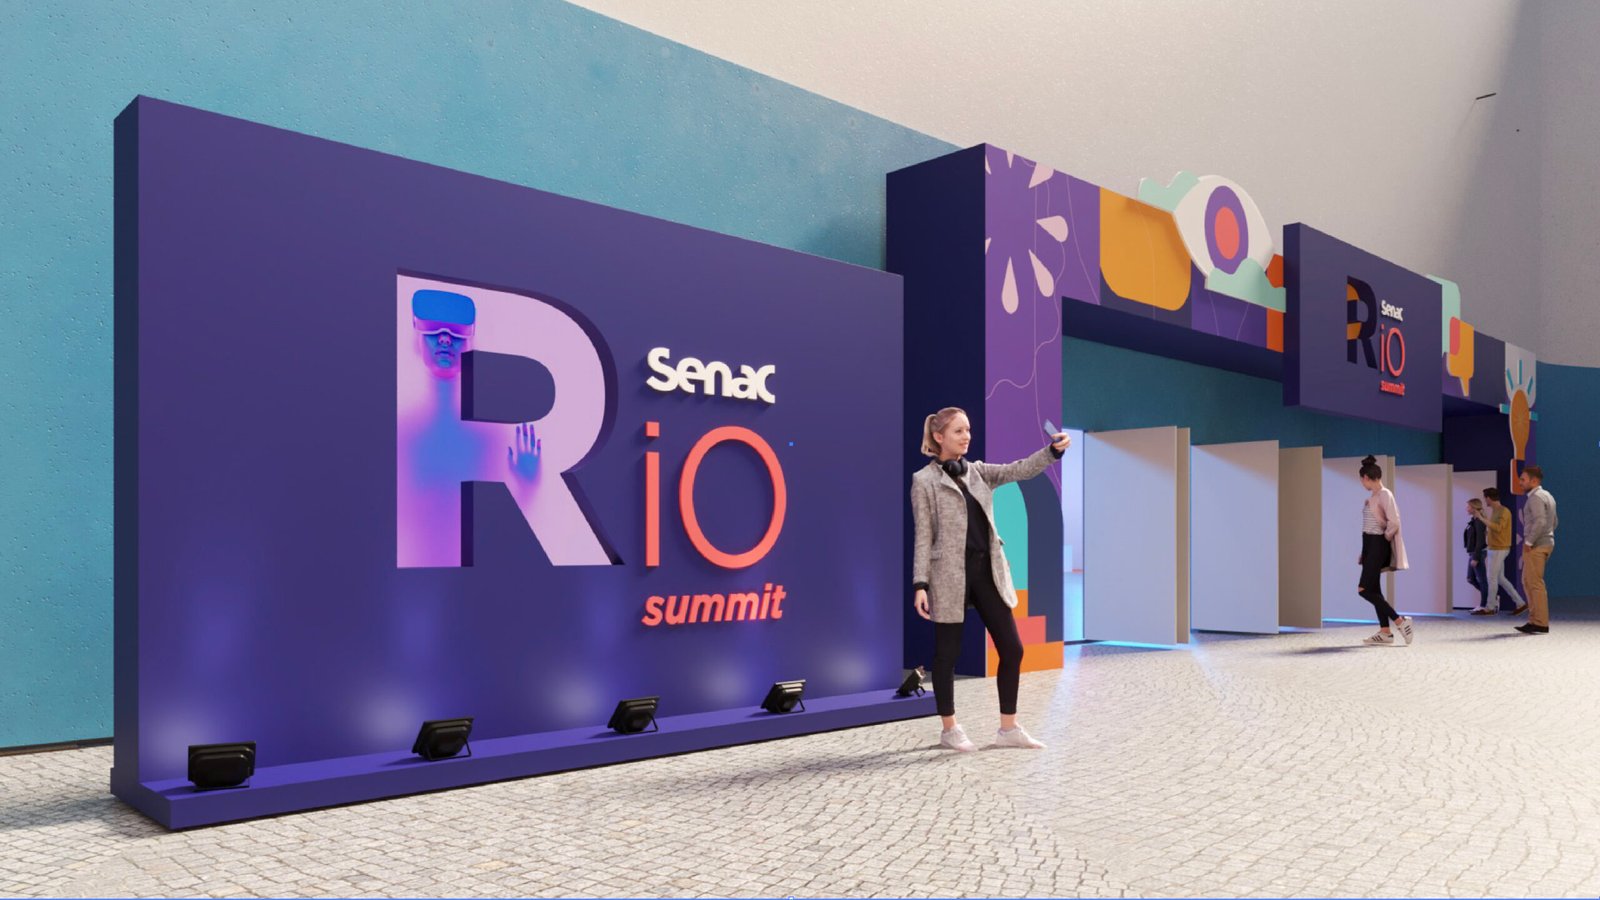 Senac Rio Summit: programação apresenta tendências de tecnologia, inovação e trabalho com profissionais das principais big techs